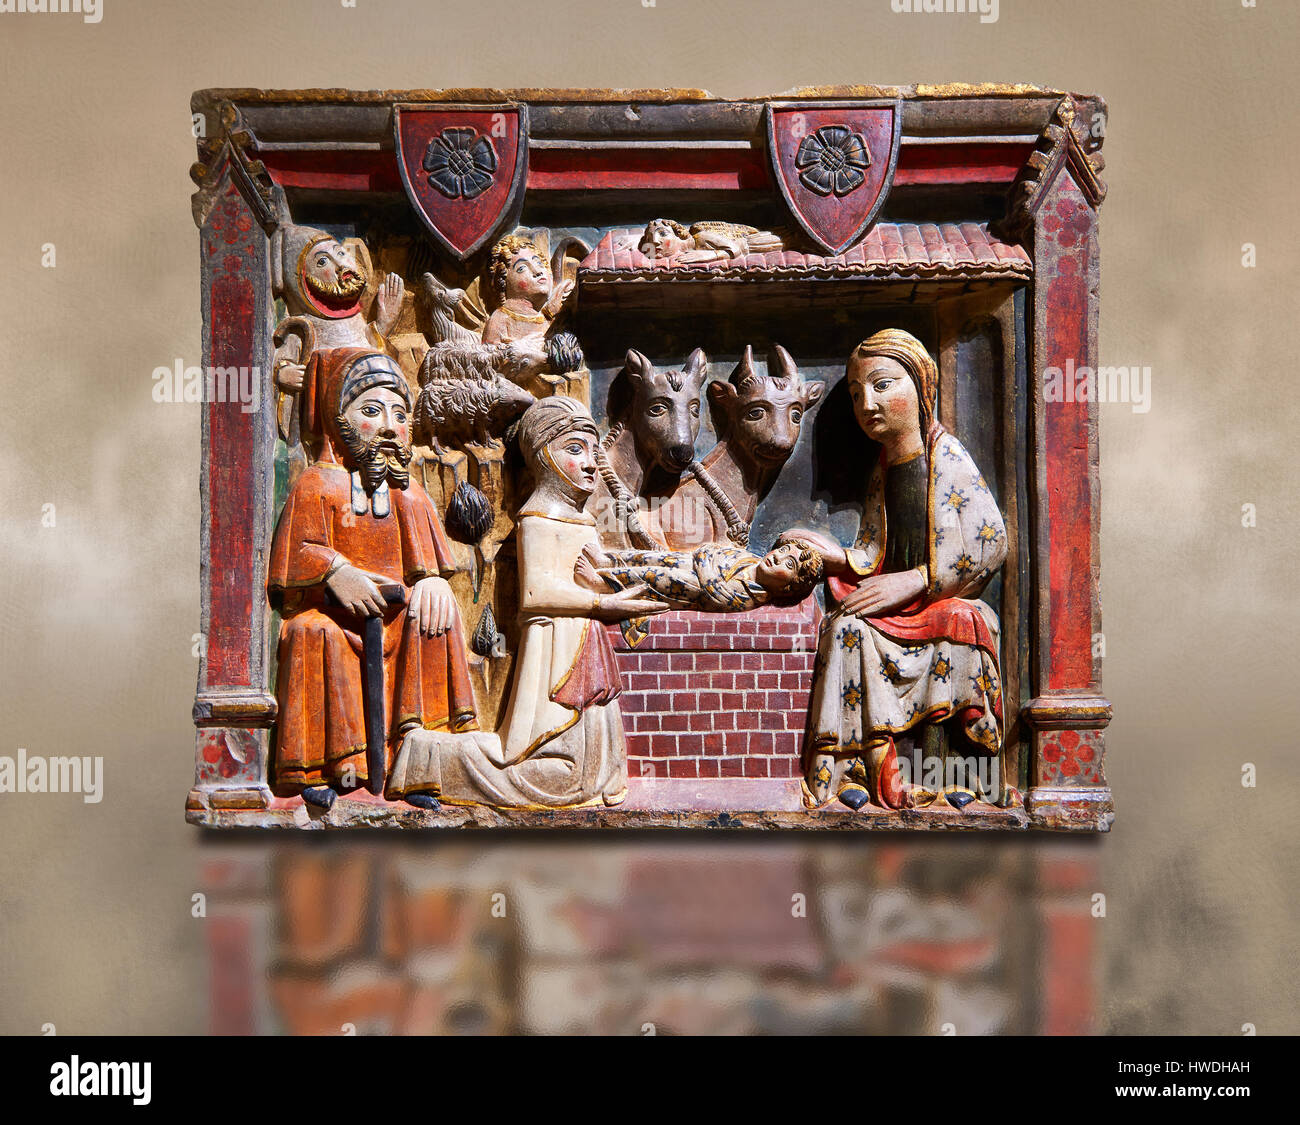 Gotisches Relief der Geburt Christi von Master Albesa gemalt. Nationales Museum für katalanische Kunst, Barcelona, Spanien, Inv keine: 017342-000 Stockfoto